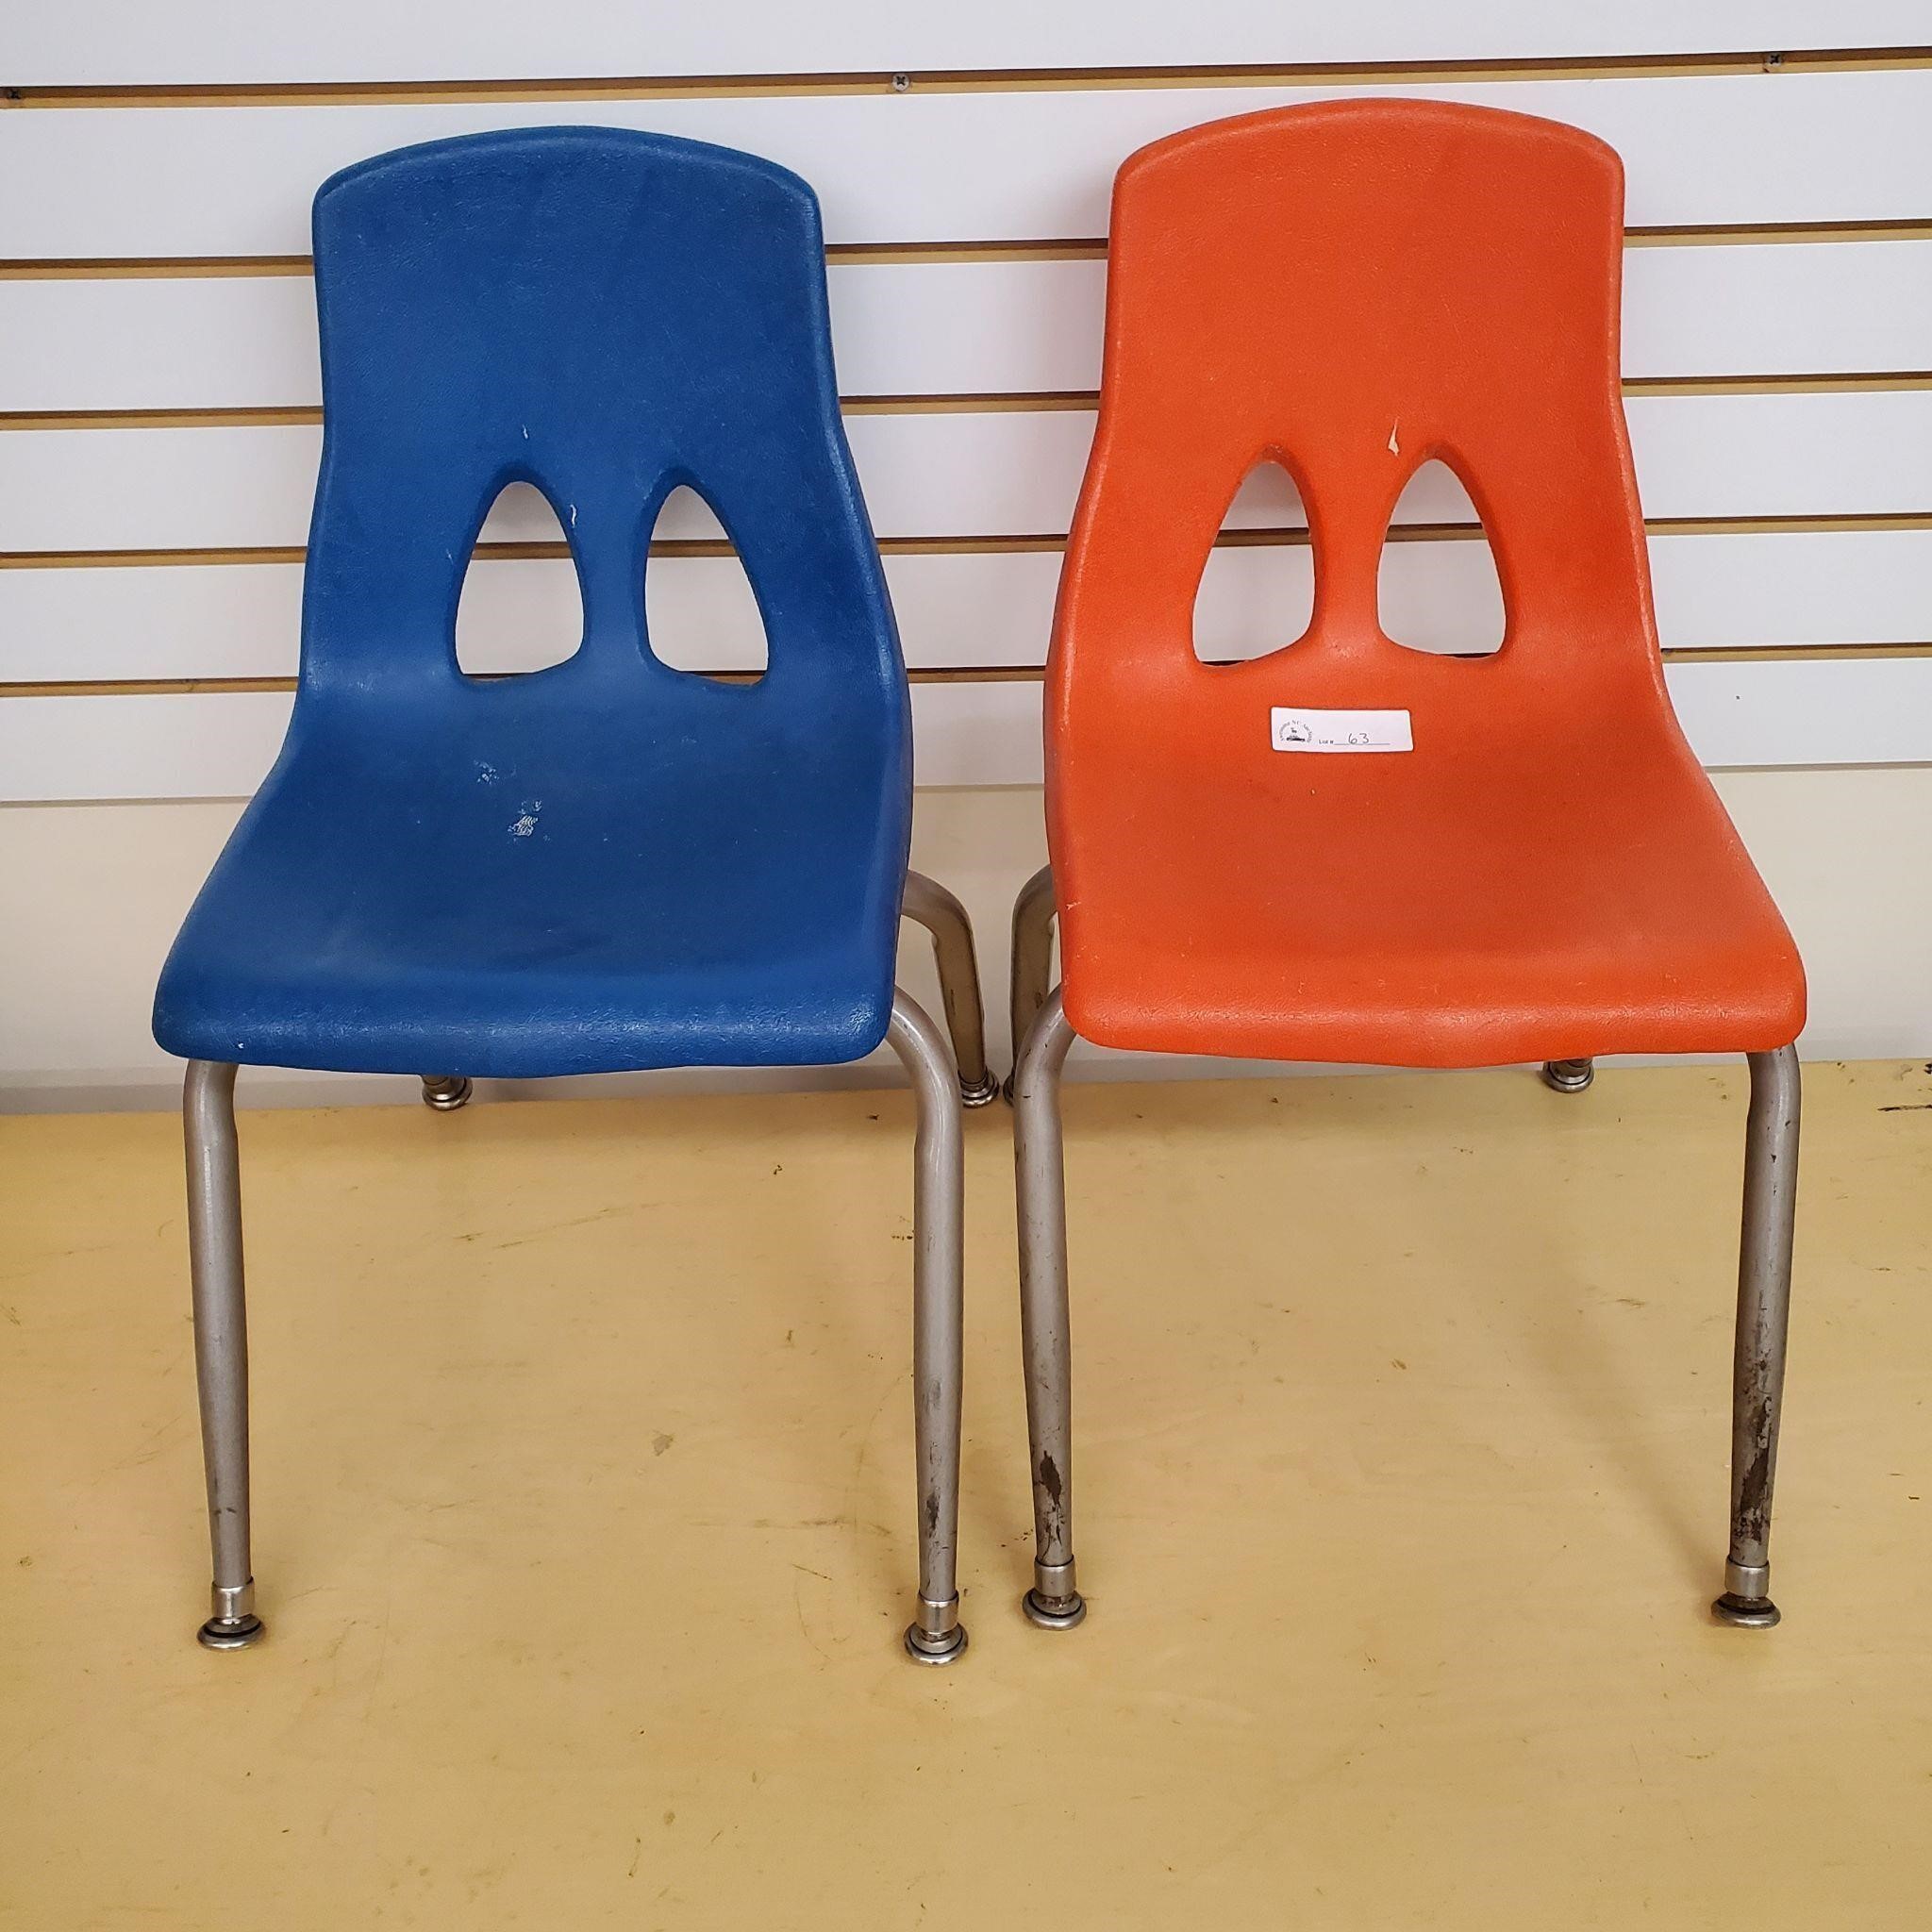 2 Children's Chairs - Orange, Blue